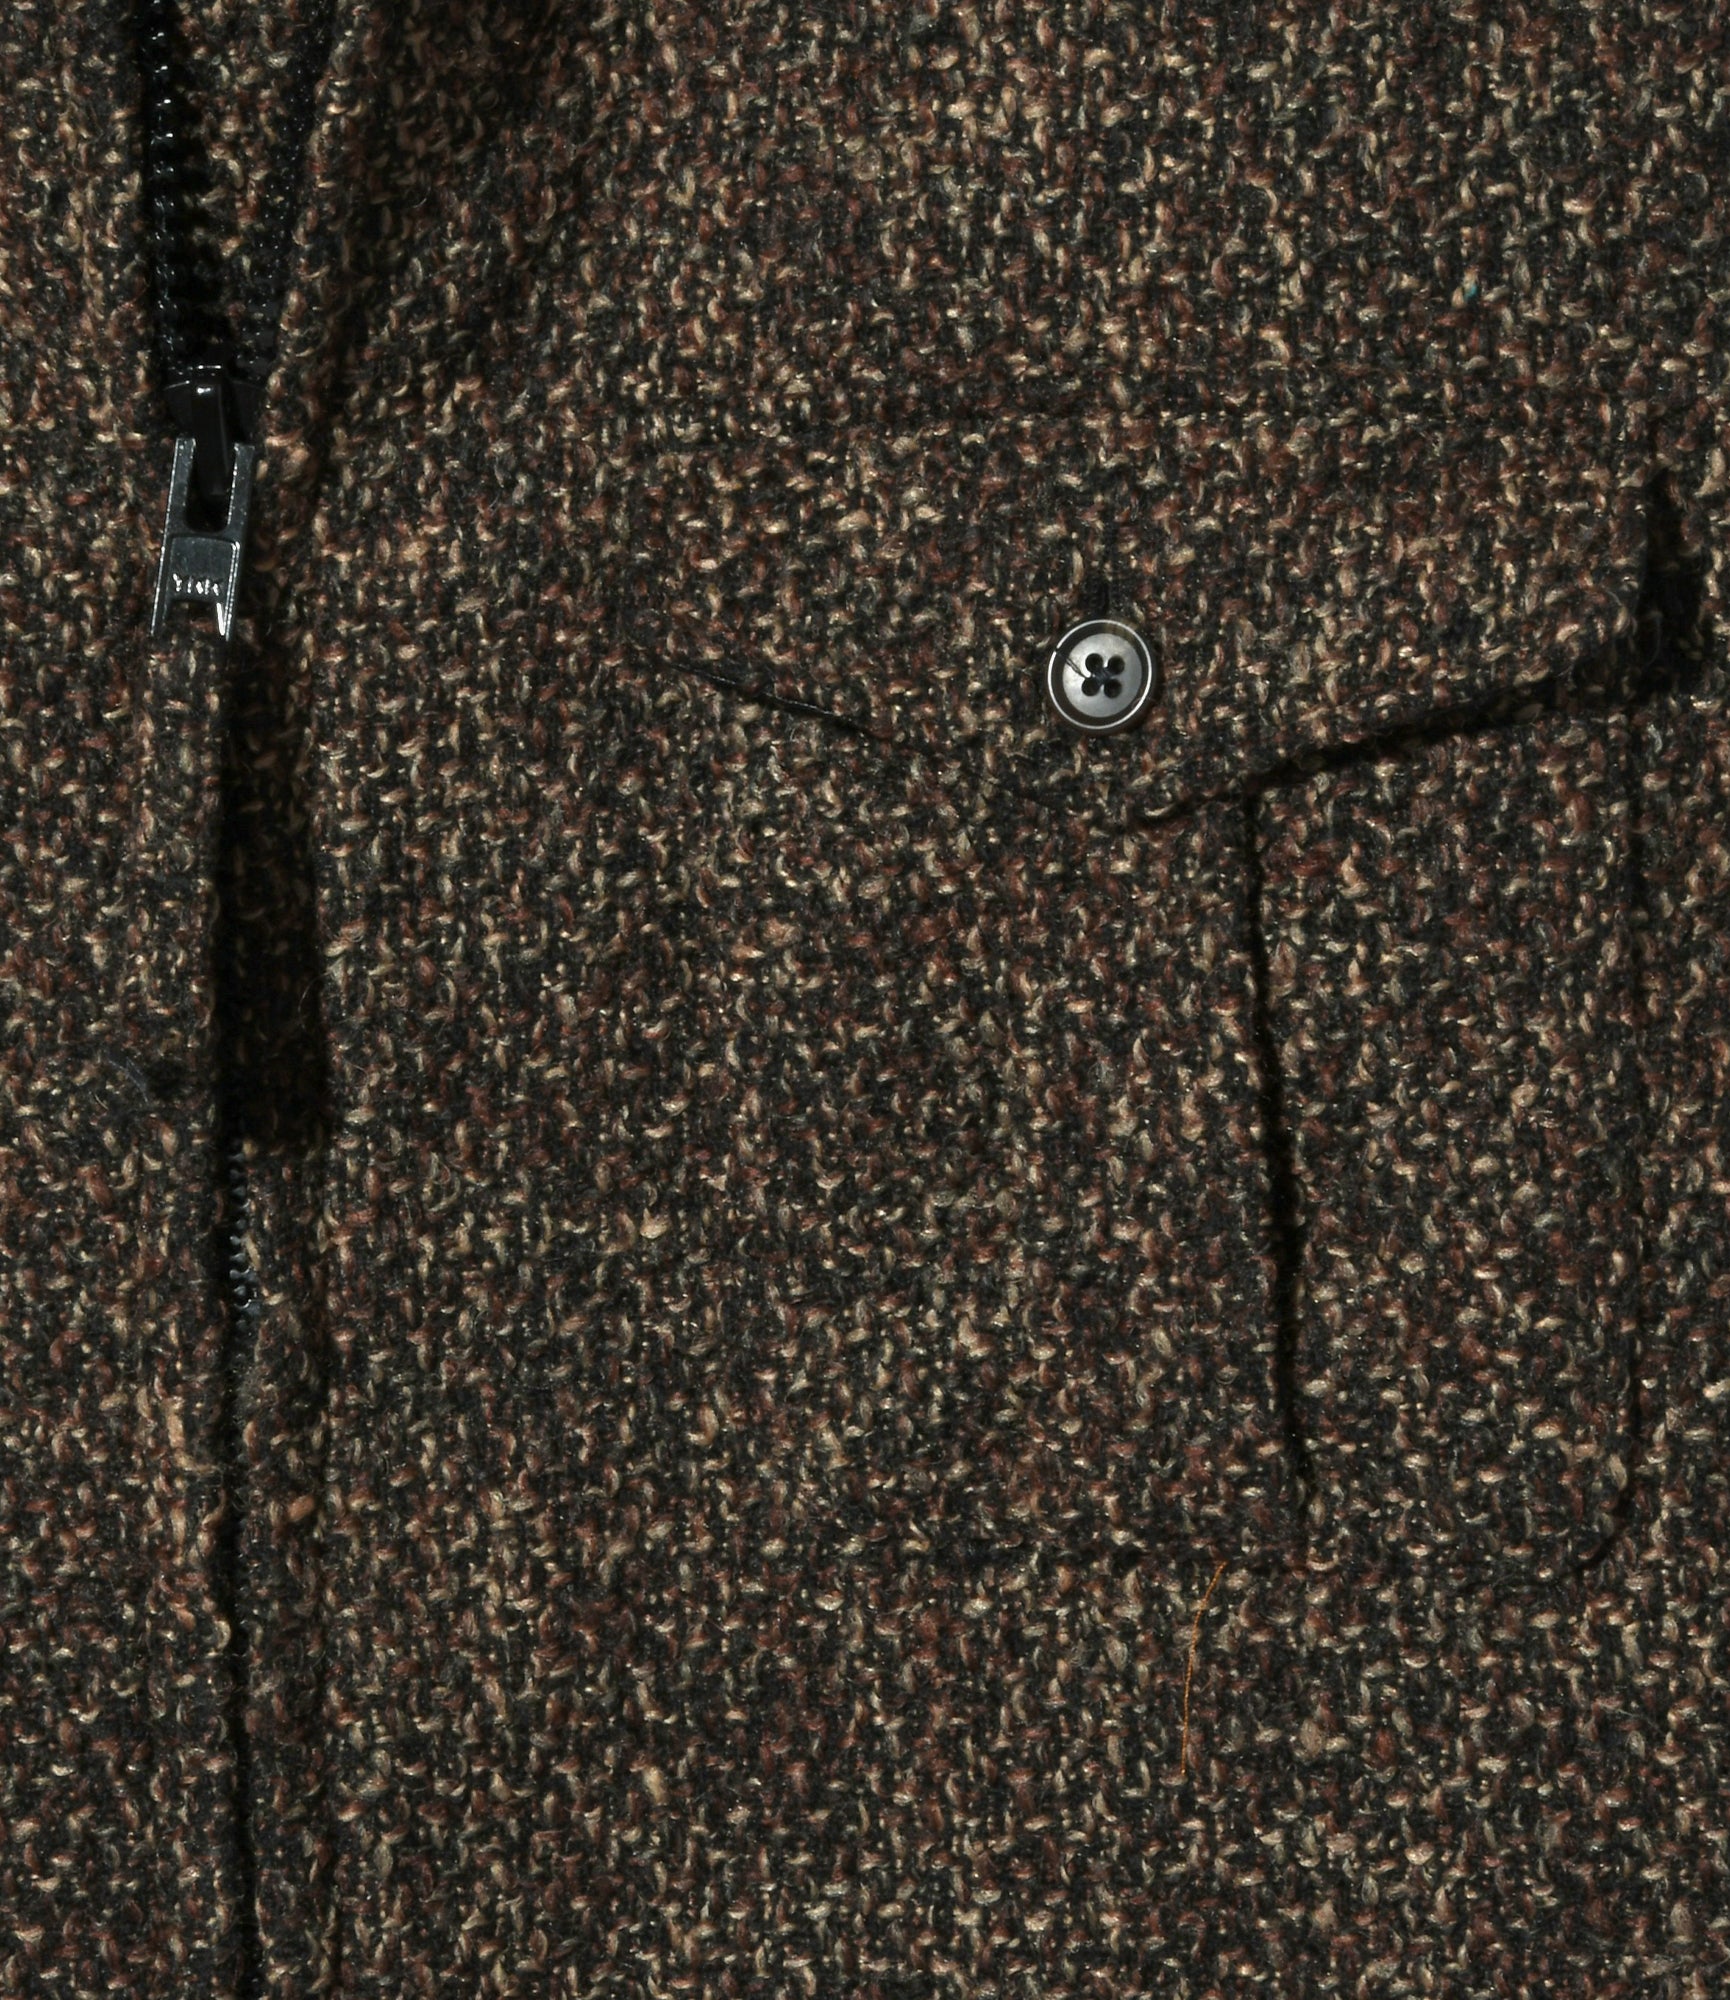 Engineered Garments SAS Jacket - Dk Brown Polyester Wool Tweed Boucle